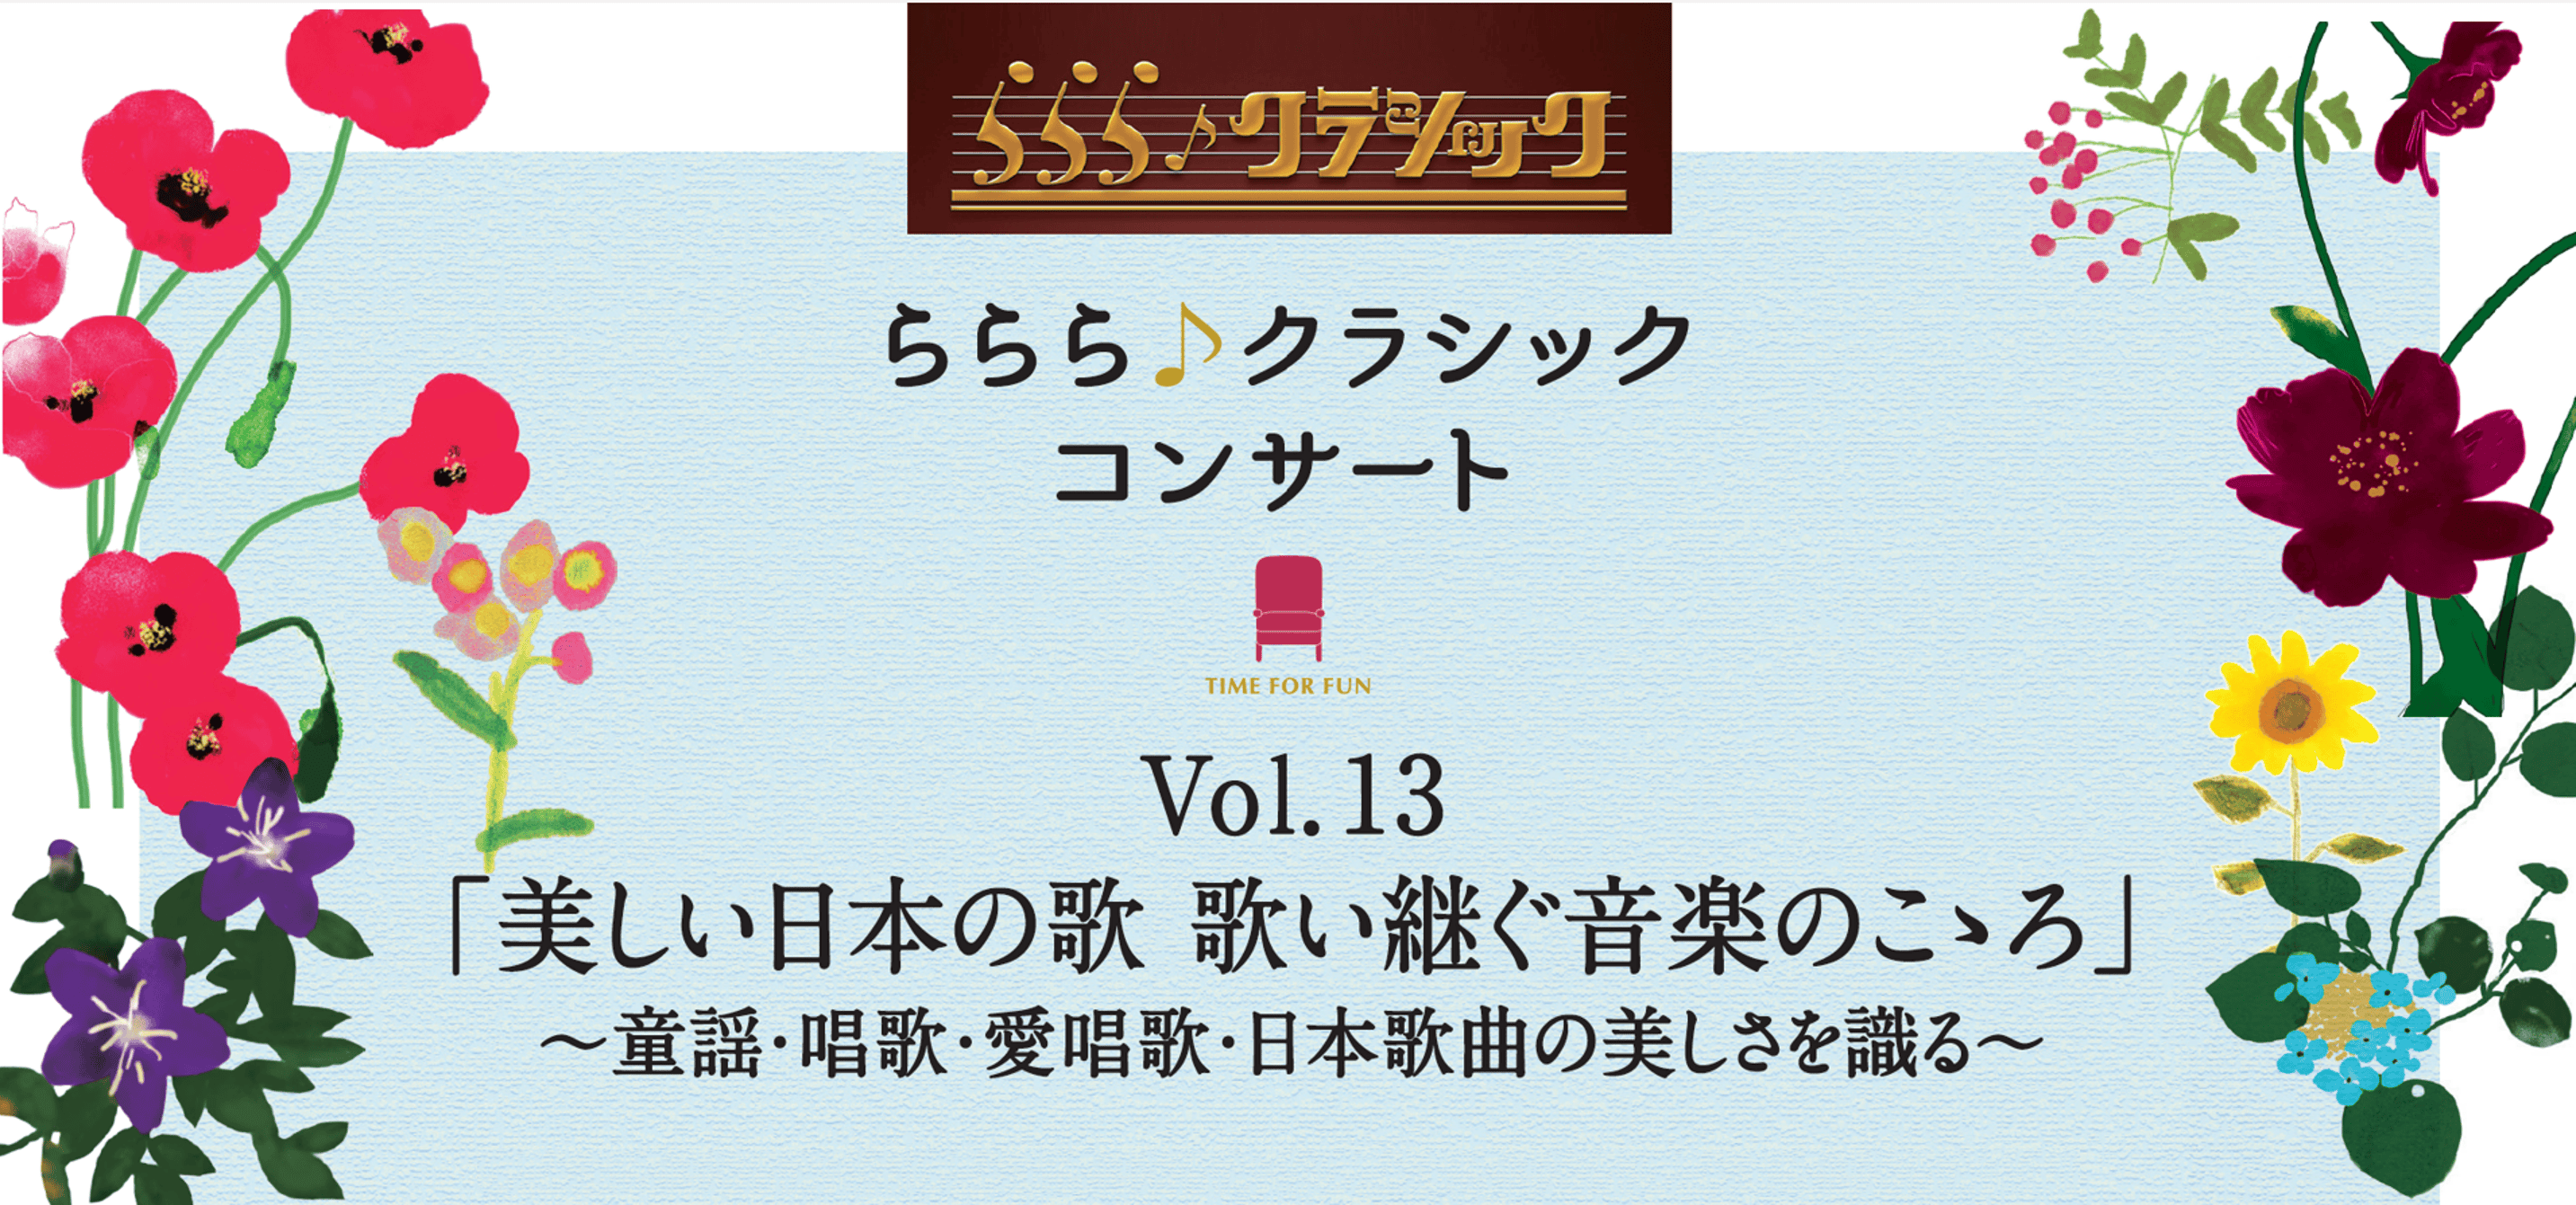 ららら♪クラシックコンサート Vol.13「美しい日本の歌　歌い継ぐ音楽のこゝろ」